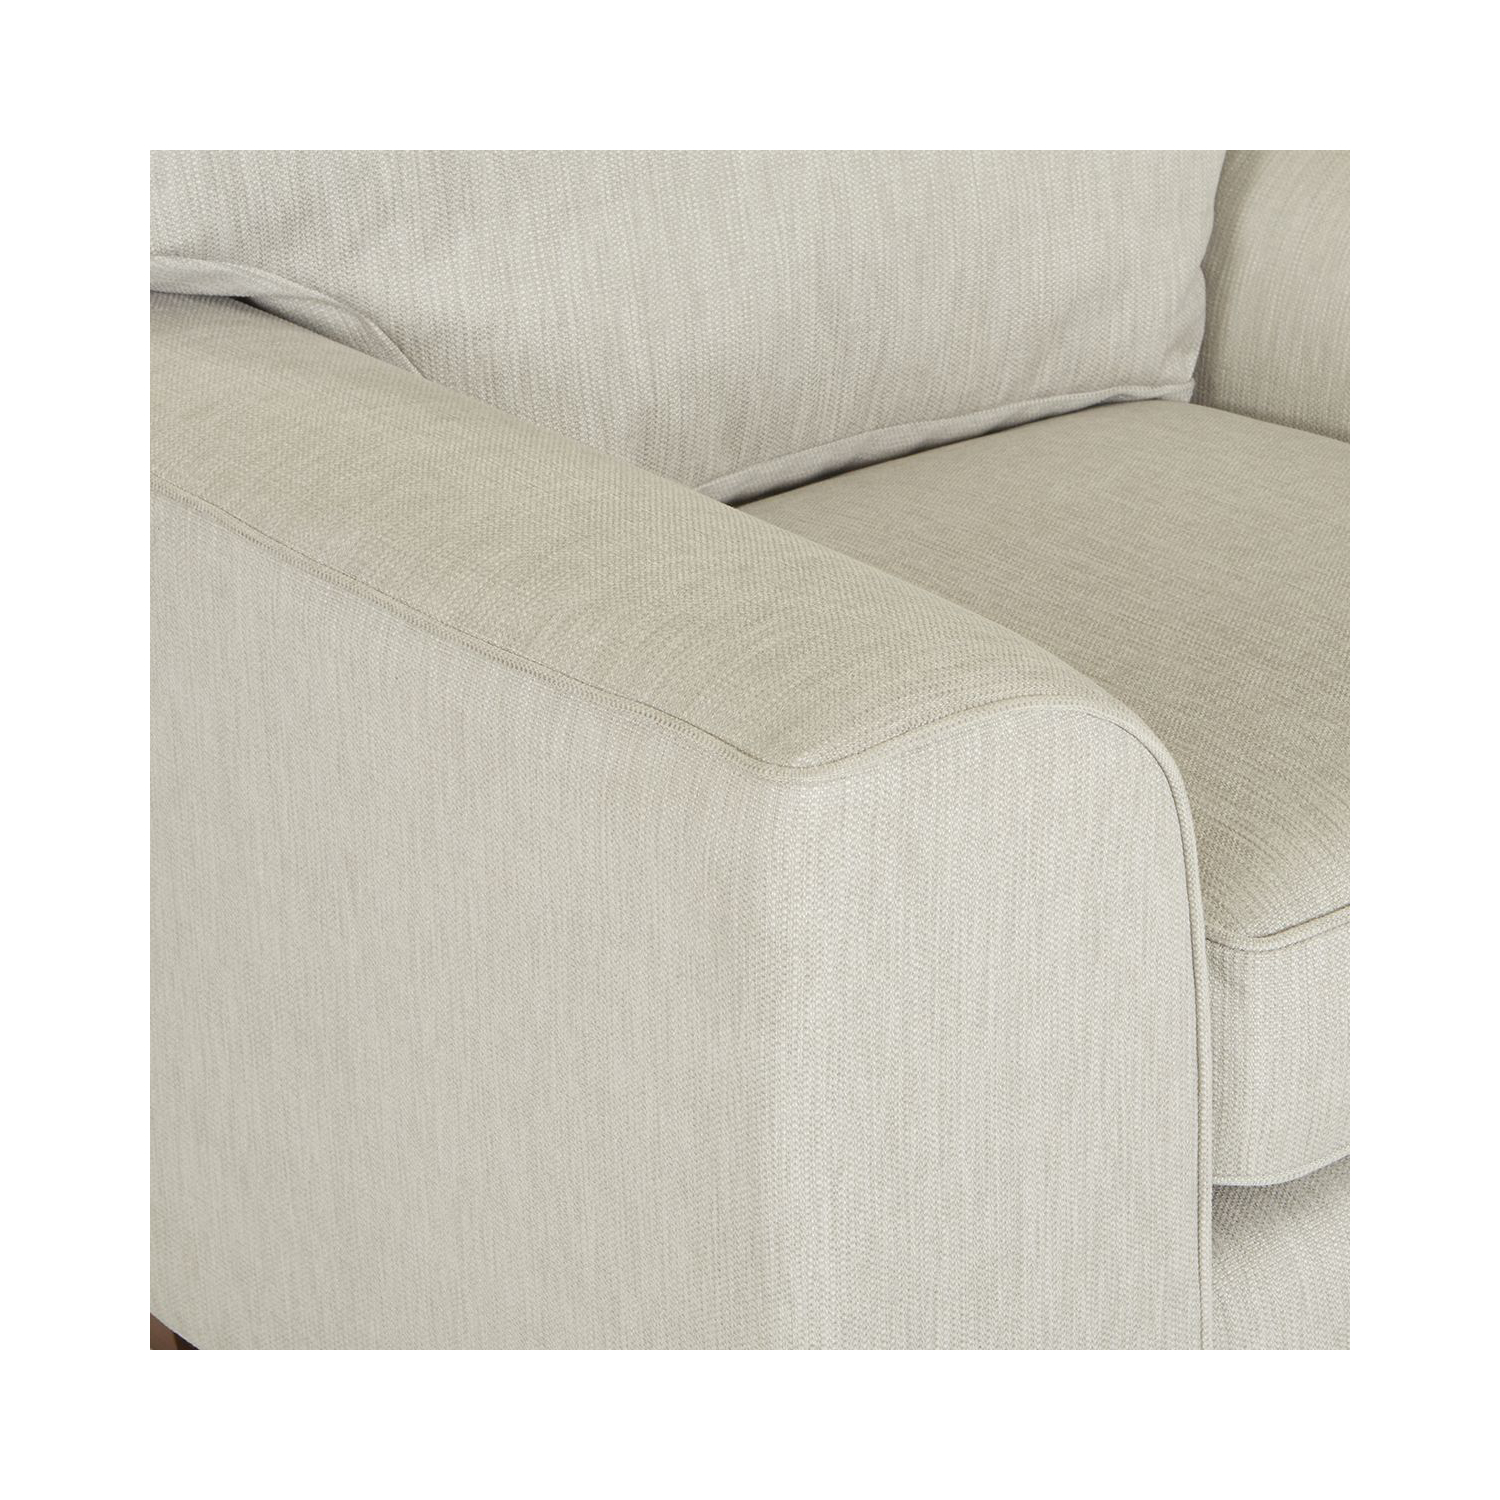 Furniture Designs Ltd Dexter Chair A